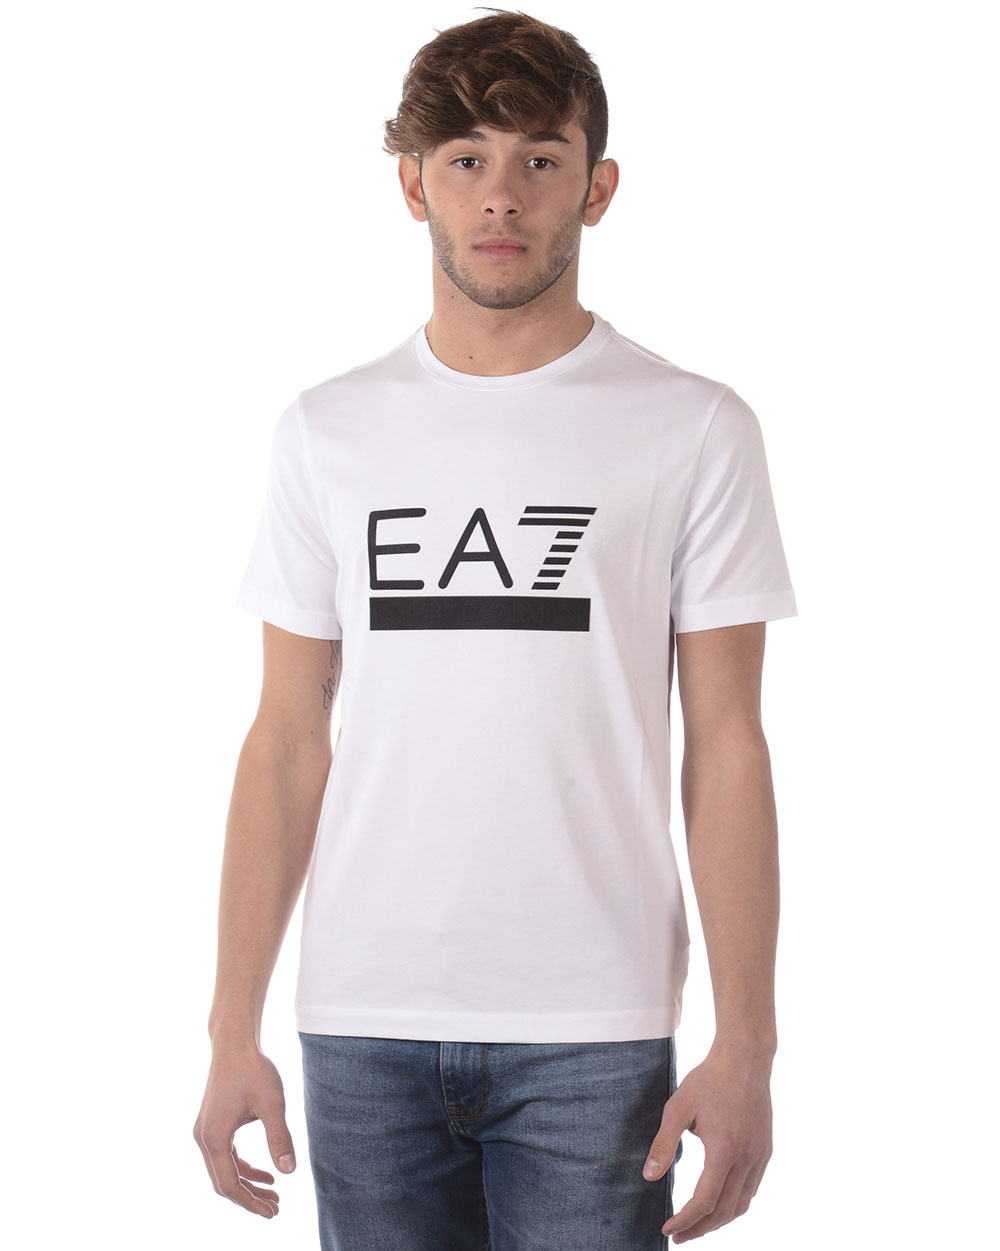 Emporio Armani EA7 T Shirt Sweatshirt Man White 3ZPT42PJ18Z 1100 Sz M MAKE OFFER